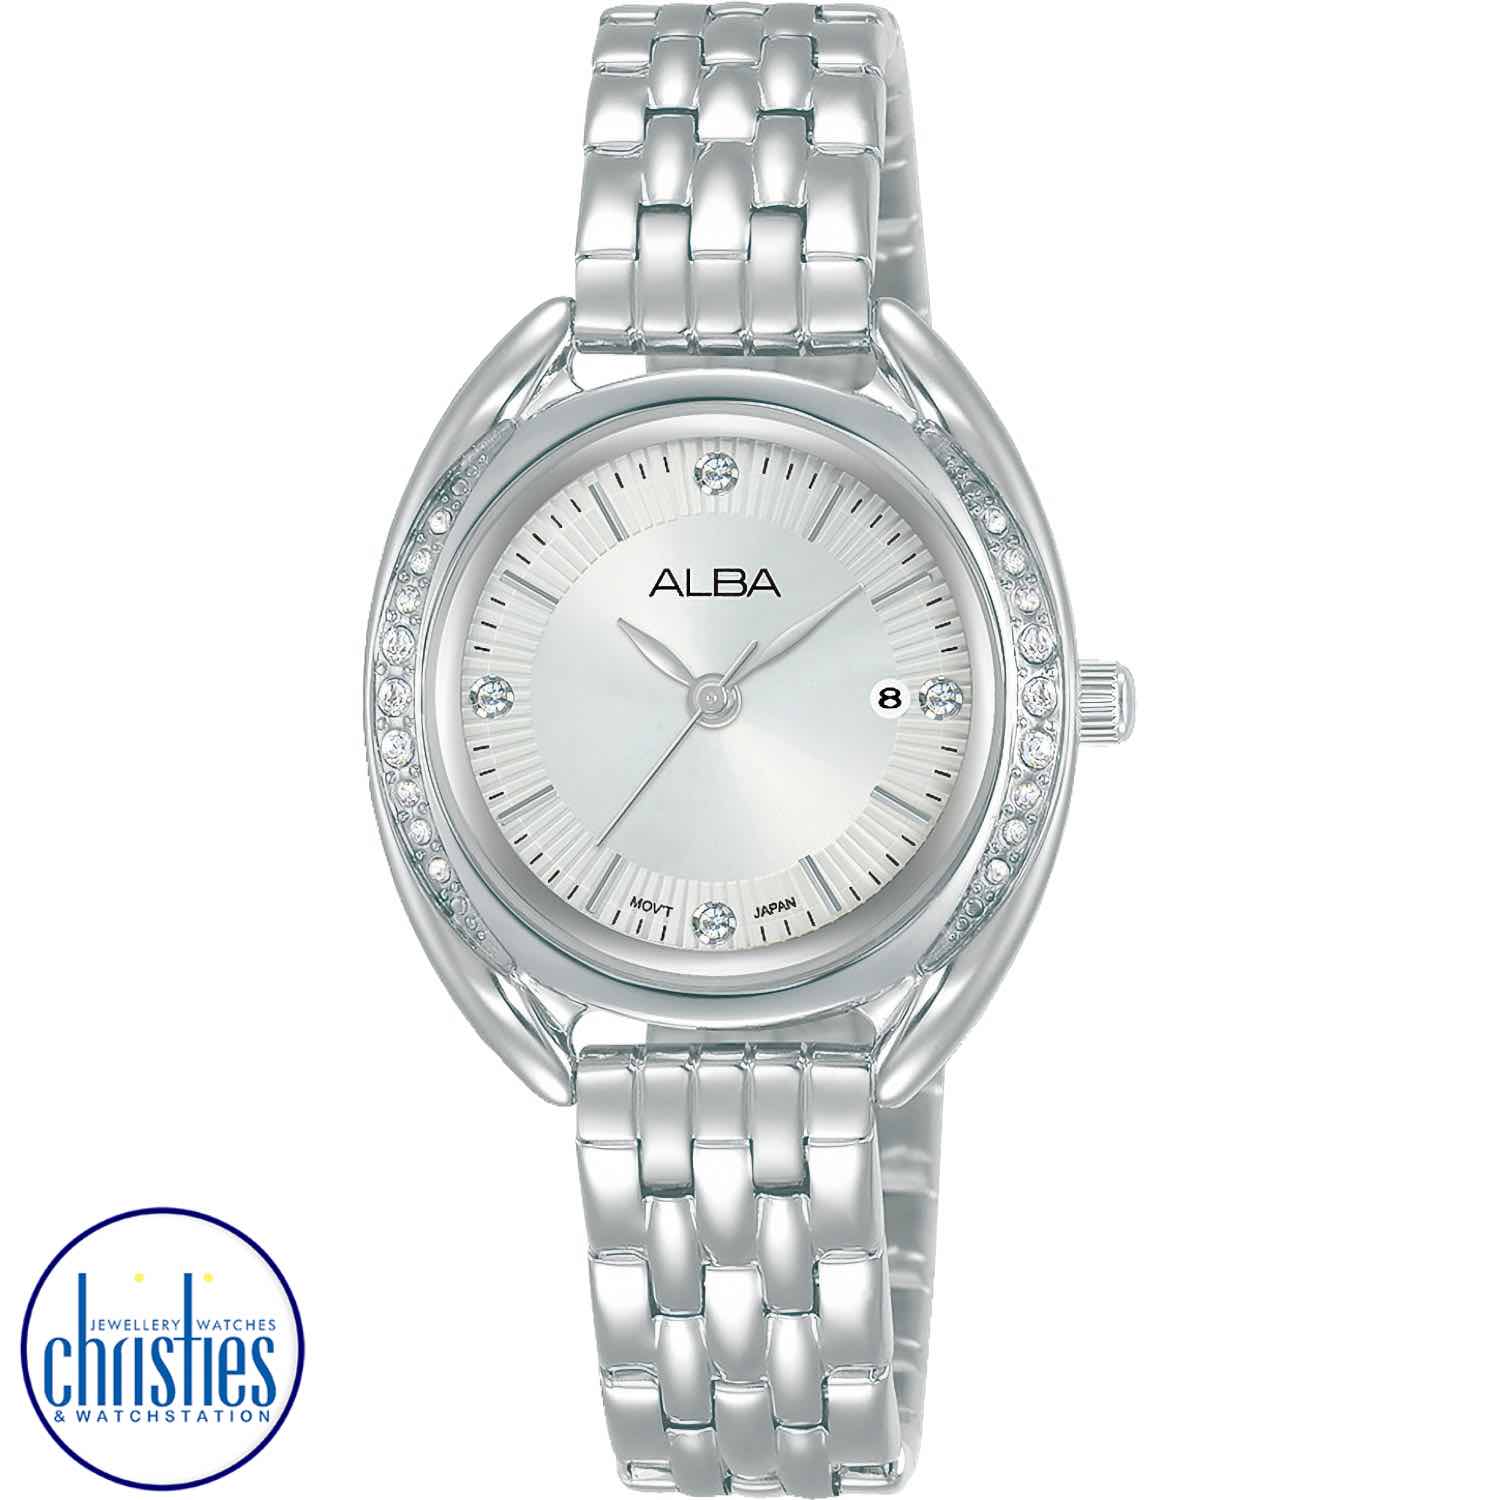 AH7Y93X1 ALBA Prestige Stainless Steel Ladies Watch ALBA watch original price